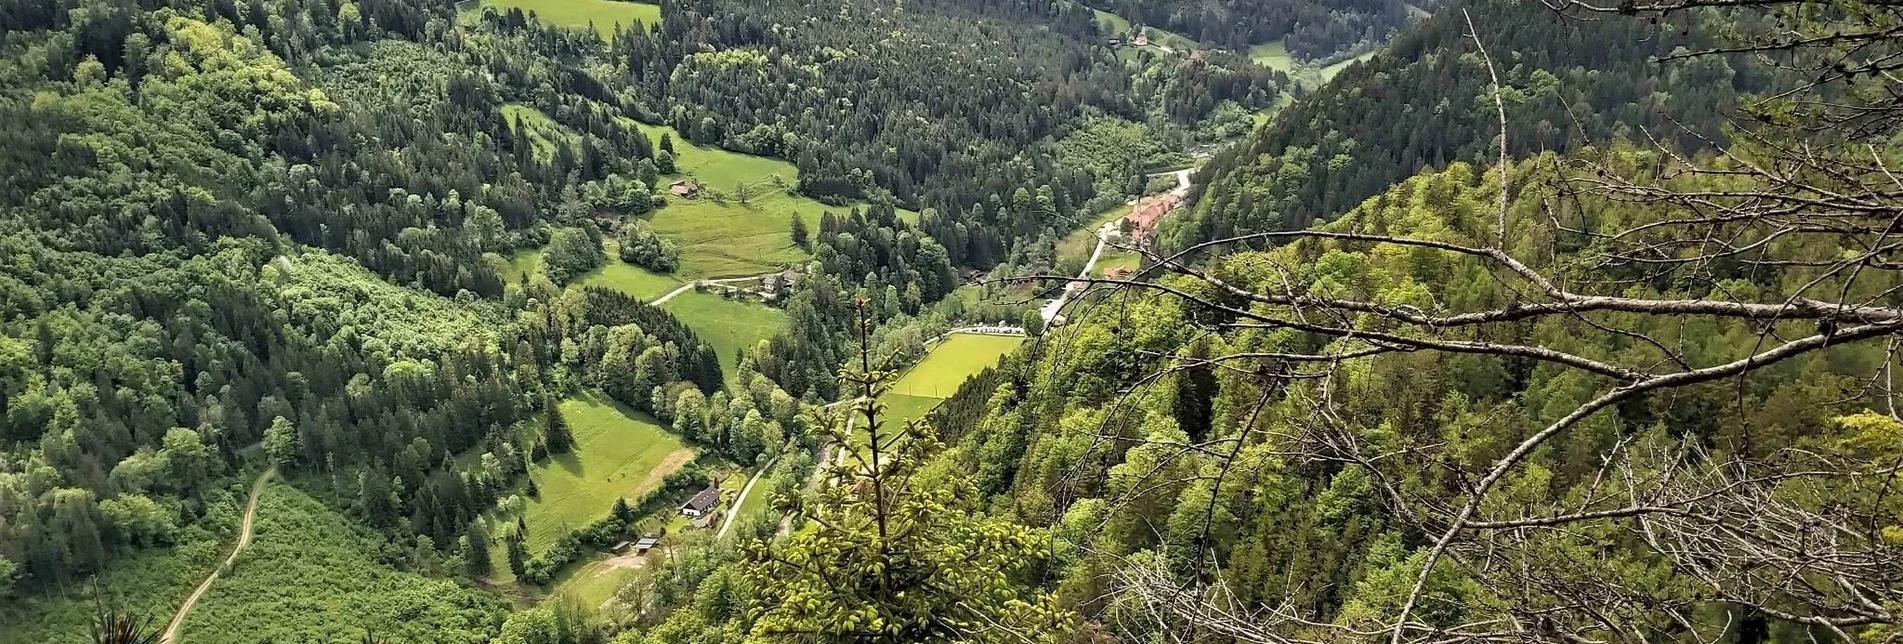 Hiking route Sattelberge & Gösser from Passail - Touren-Impression #1 | © Oststeiermark Tourismus